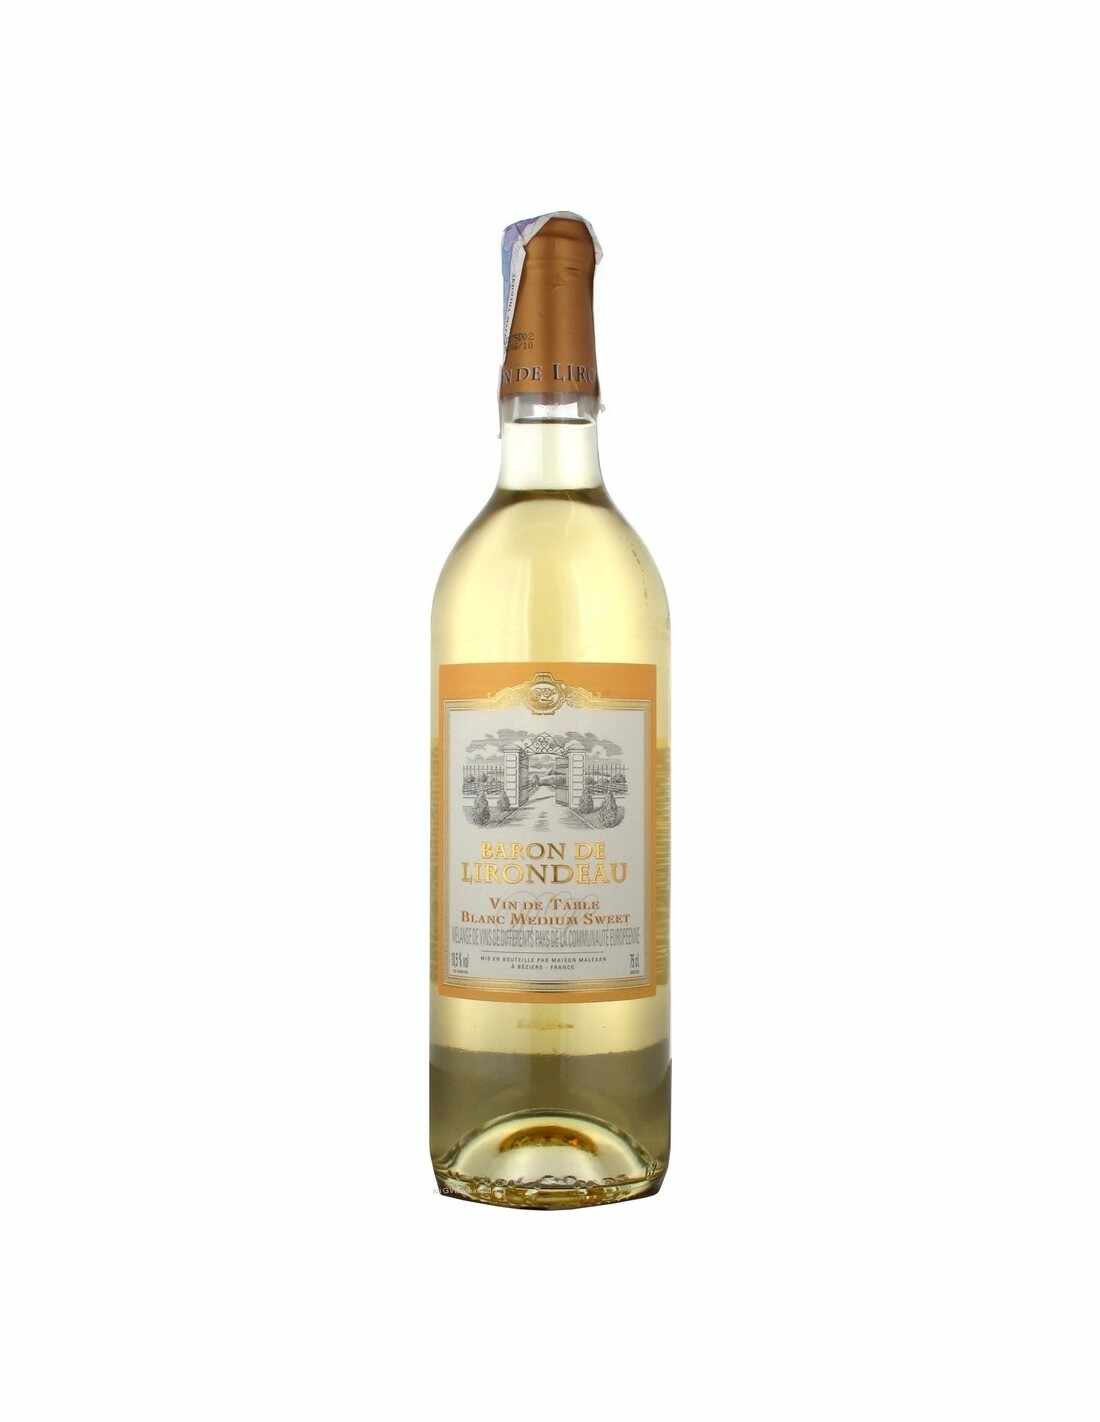 Vin alb demidulce, Cupaj, Baron de Lirondeau Coteaux de BÃ©ziers, 0.75L, 10.5% alc., Franta